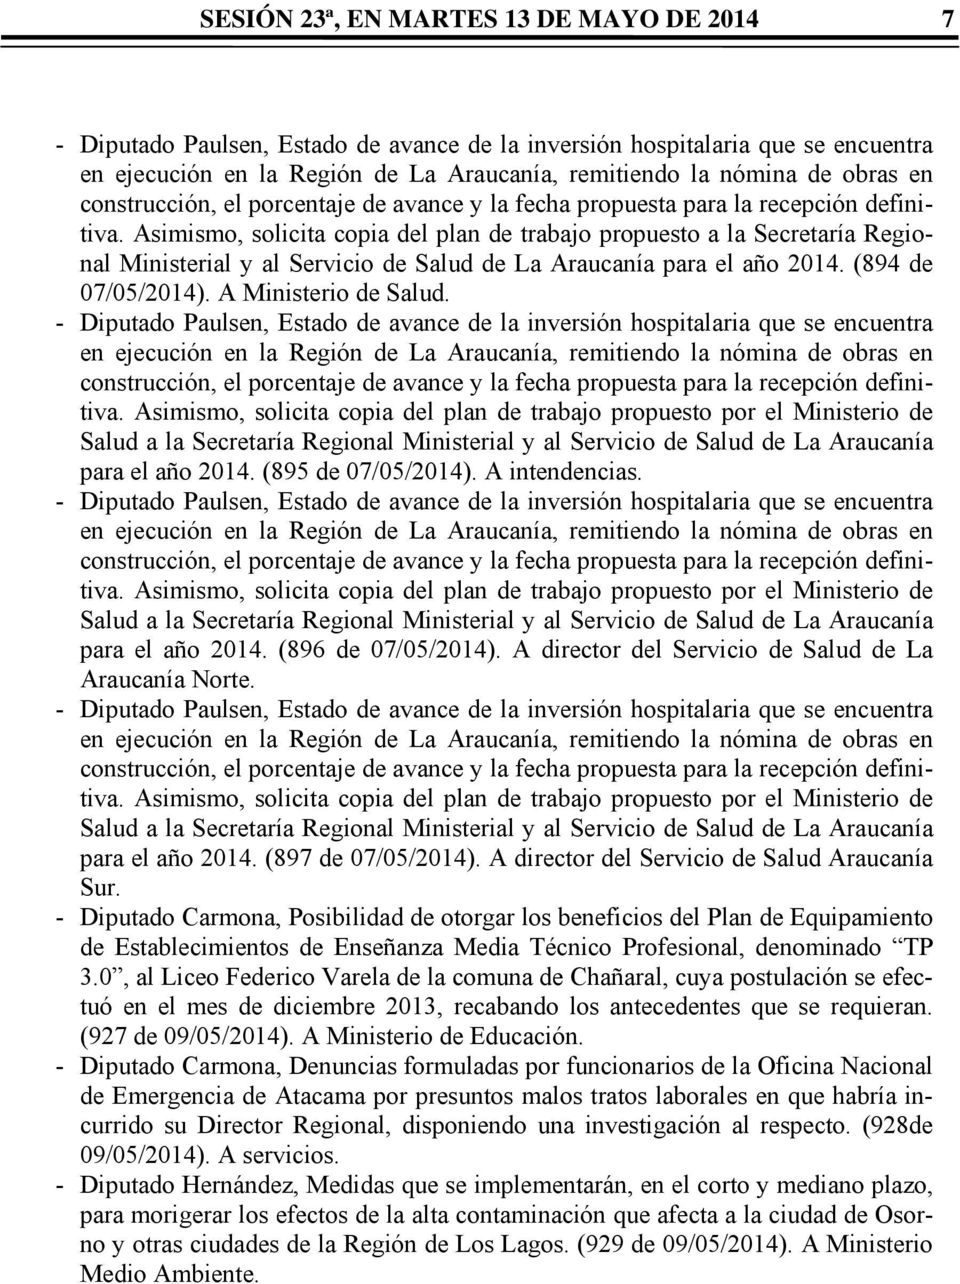 Asimismo, solicita copia del plan de trabajo propuesto a la Secretaría Regional Ministerial y al Servicio de Salud de La Araucanía para el año 2014. (894 de 07/05/2014). A Ministerio de Salud.